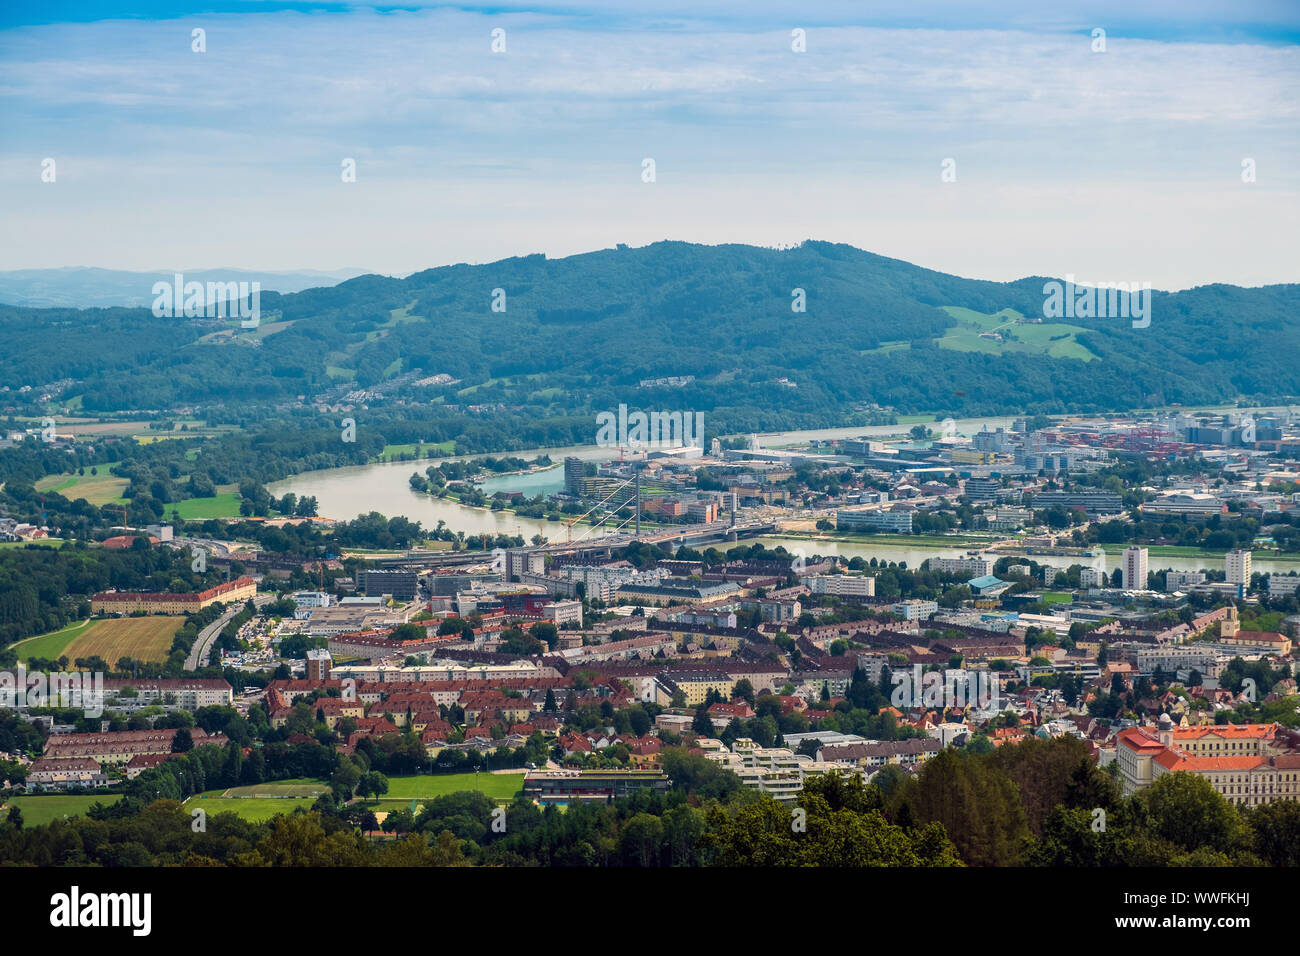 Die Postlingberg ist ein 539 Meter hoher Berg am linken Ufer der Donau in der Stadt Linz, Österreich. Es ist ein beliebtes Touristenziel, mit einem vi. Stockfoto